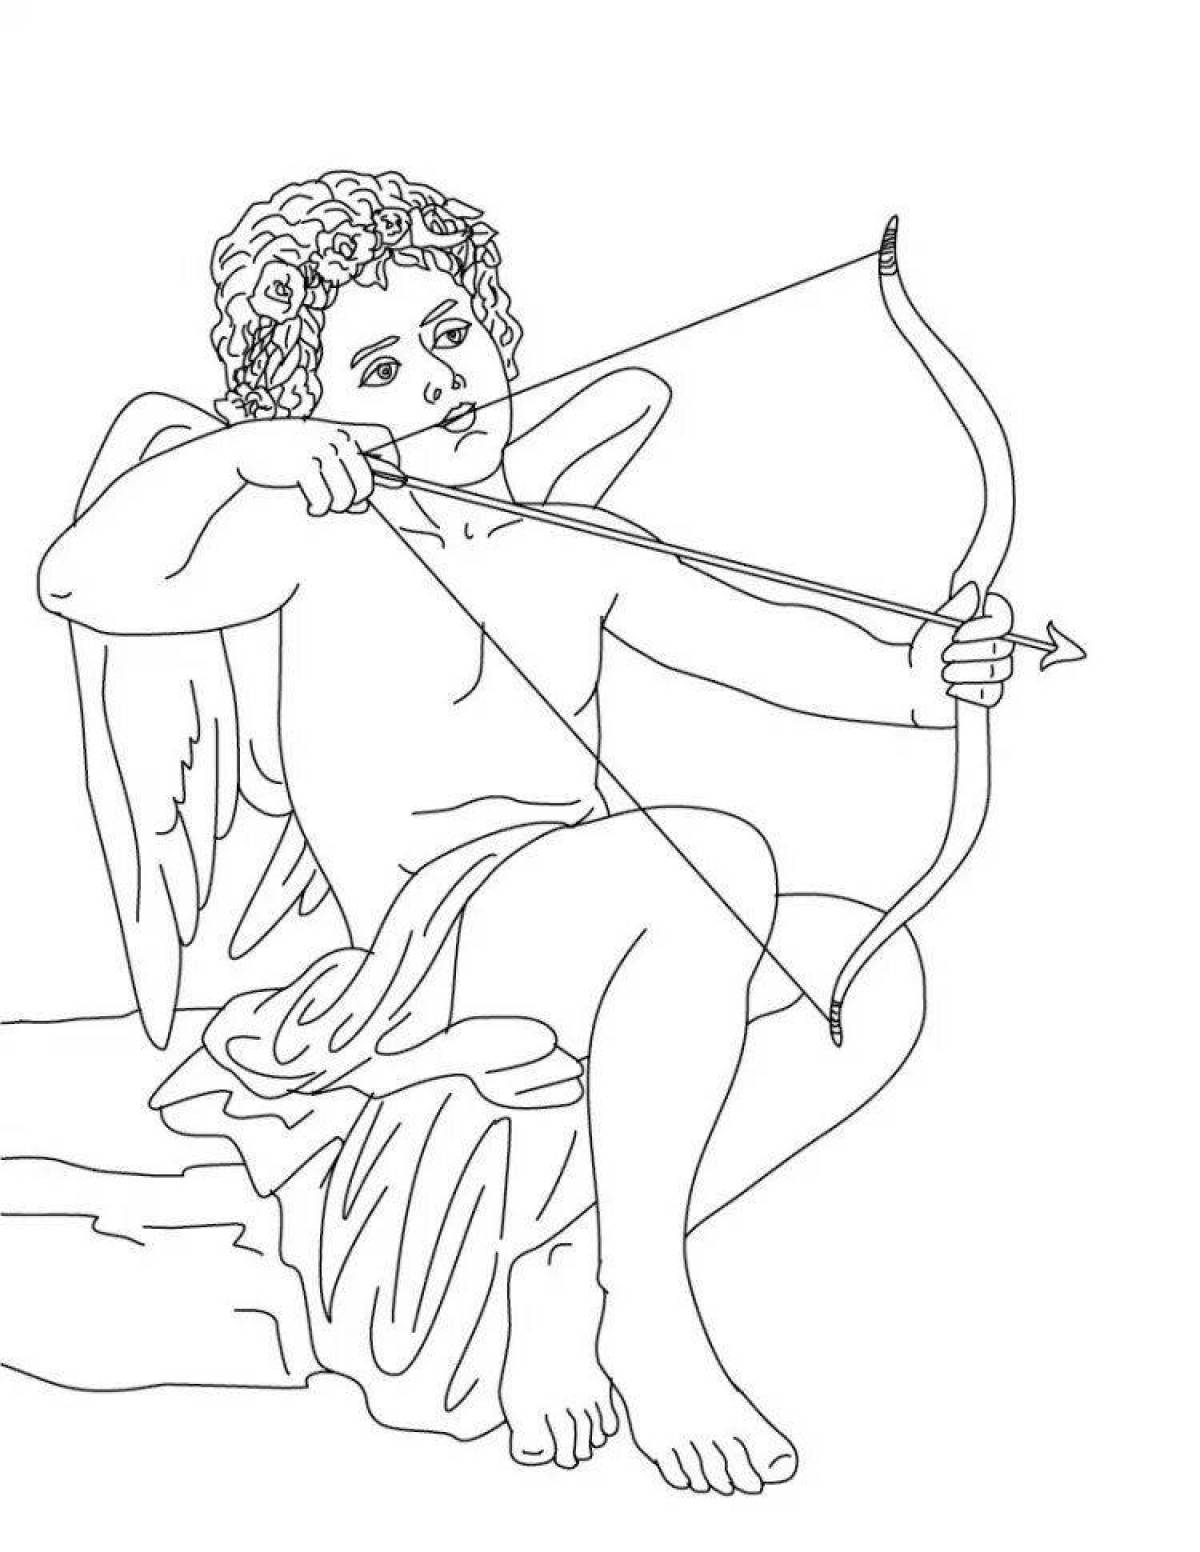 Royal coloring of ancient Greek myths